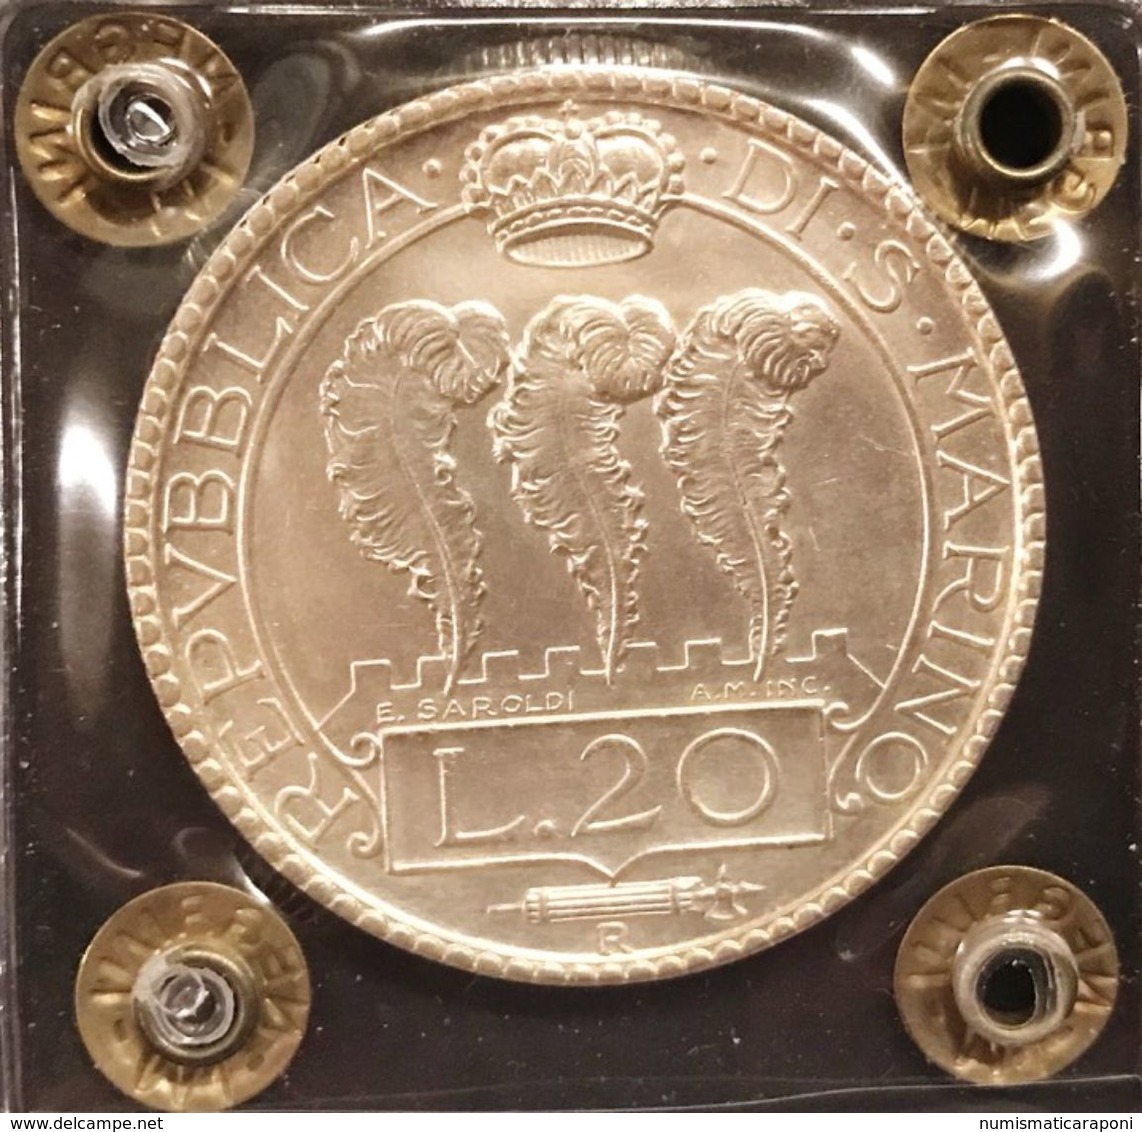 San Marino Vecchia Monetazione 20 Lire 1933 Fdc Sigillata Nrgrini  D.4650 - San Marino